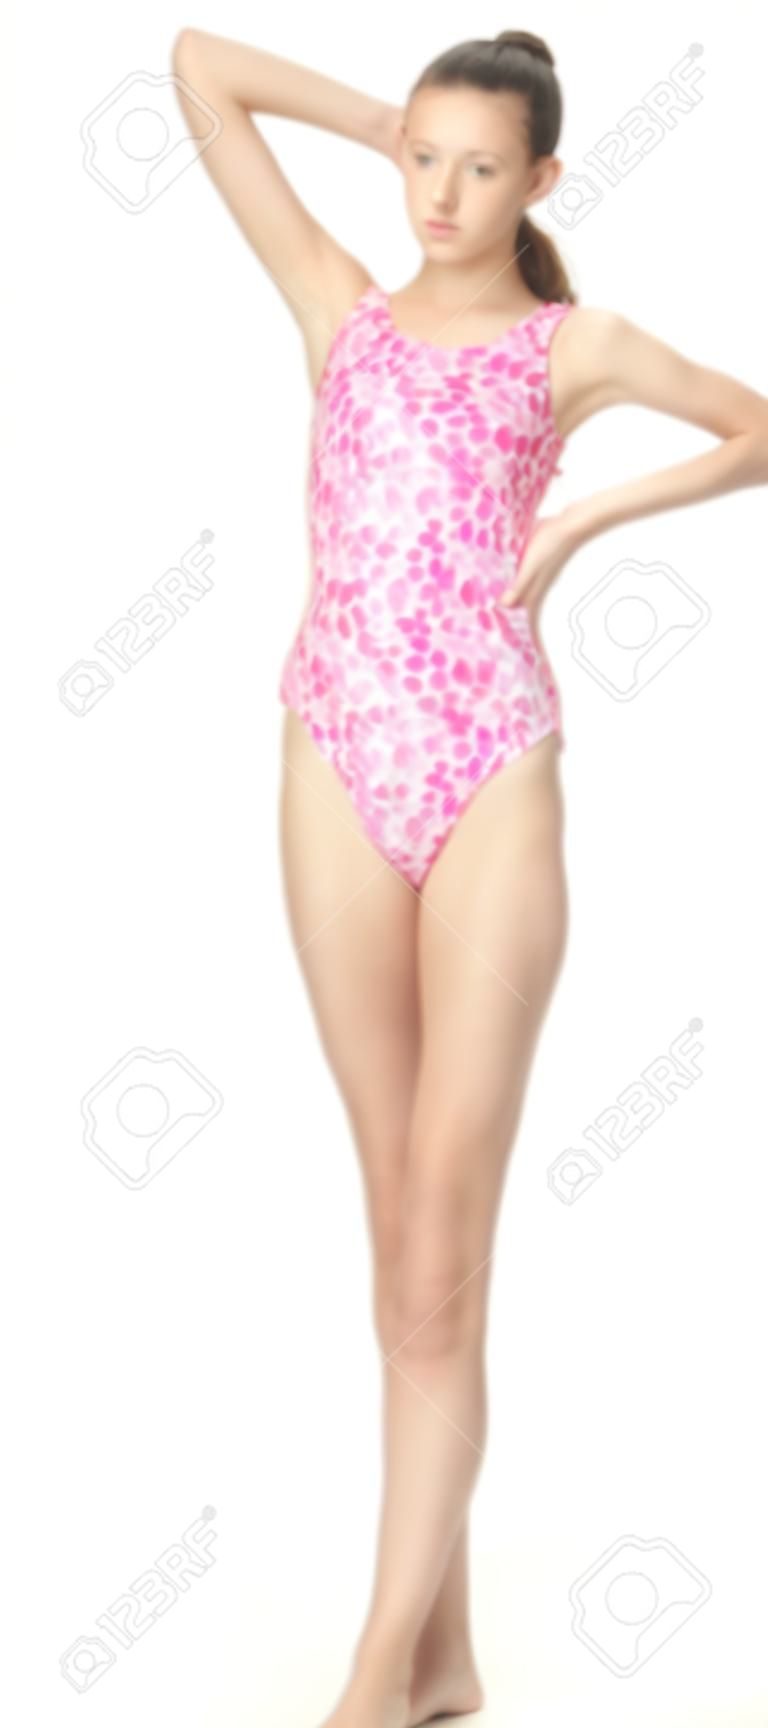 Подросток девушка моделирования один кусок купальный костюм на